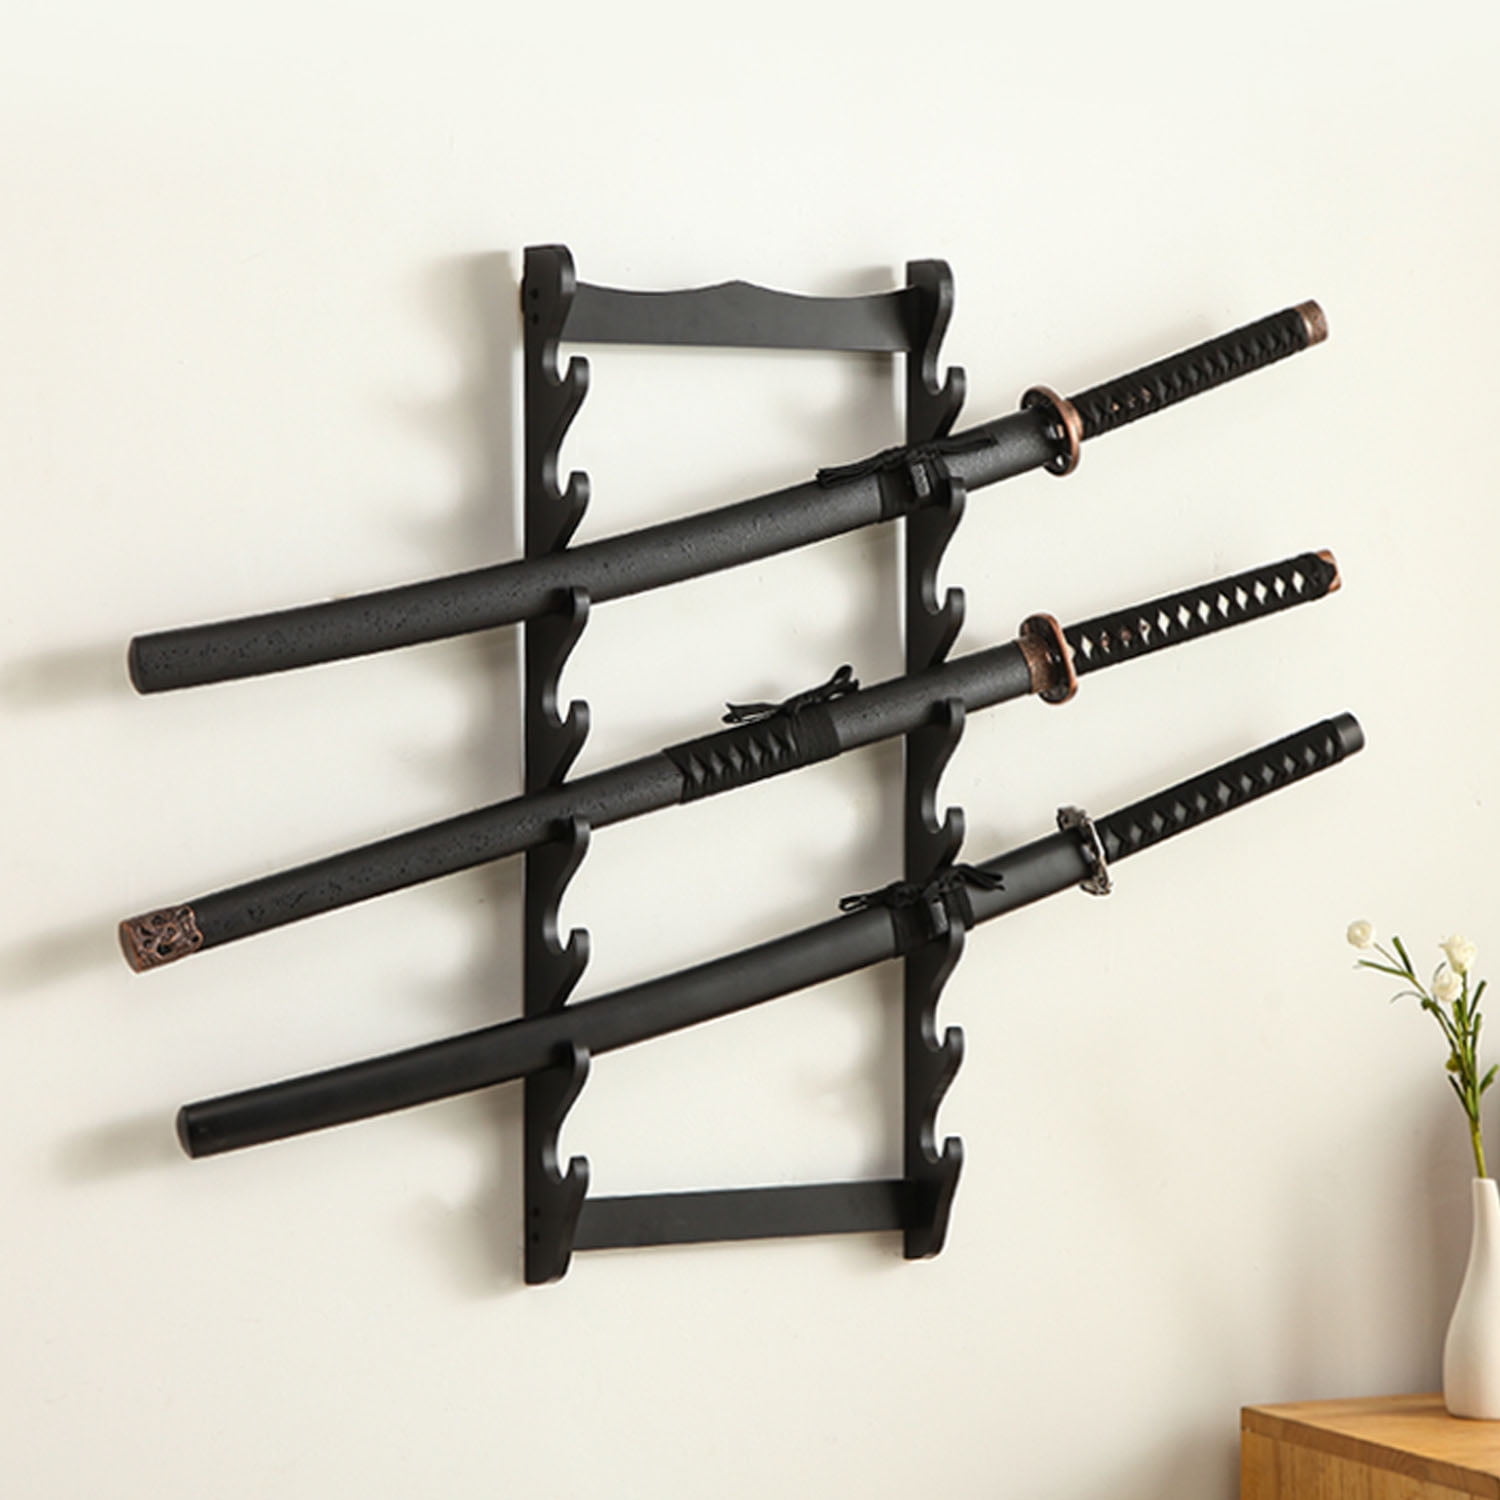 2x Sword Wall Mount Sword Holder Sword Display Sword Stand Rack with Felt Strips 